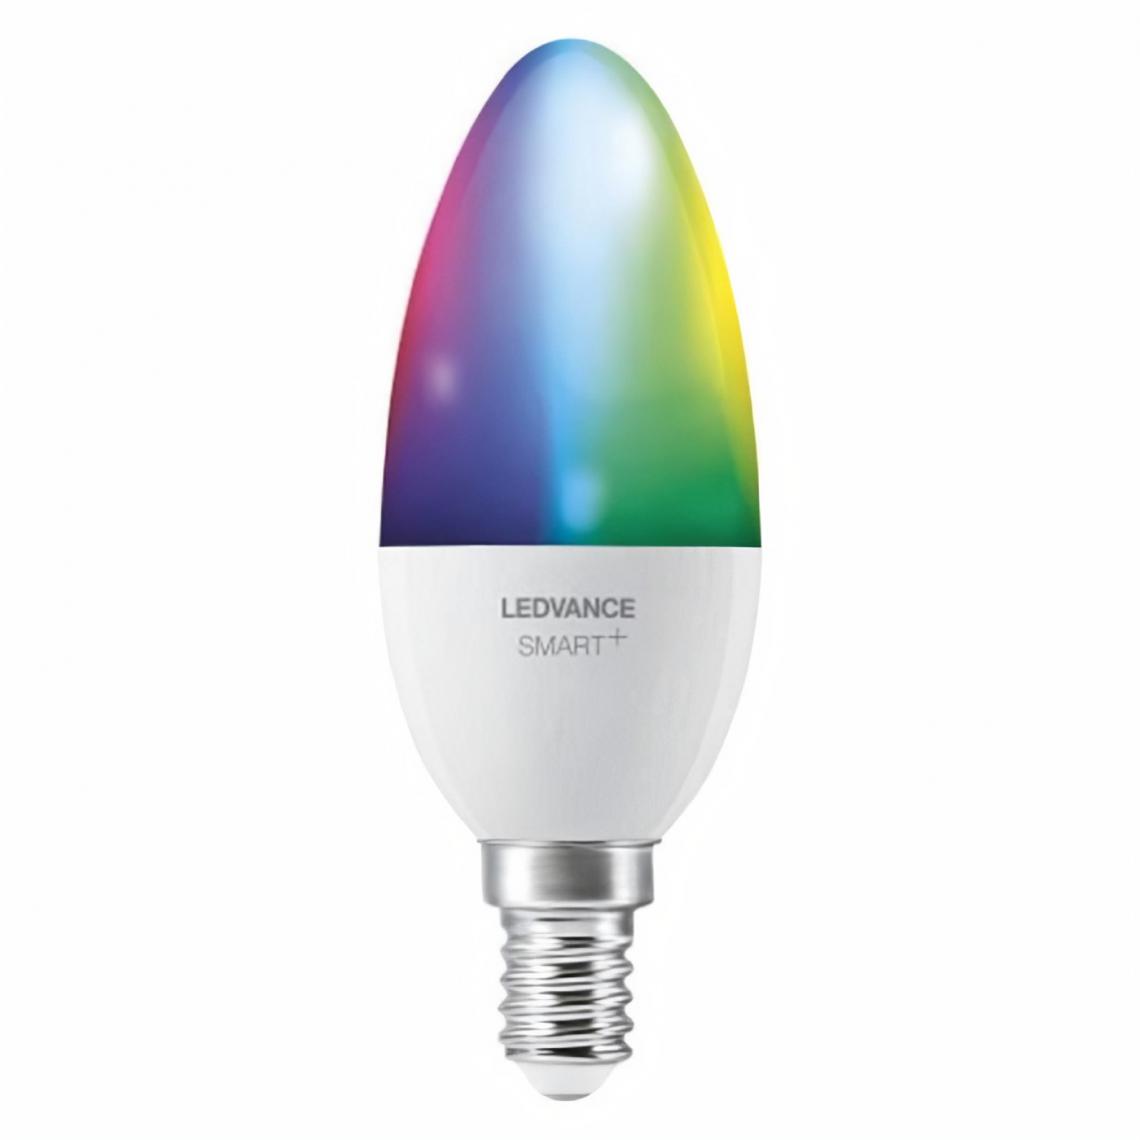 Ledvance - LEDVANCE BTE1 Ampoule Smart+ WIFI FLAMME DEPOLIE 40W E14/COULEUR CHANGEANTE - Lampe connectée